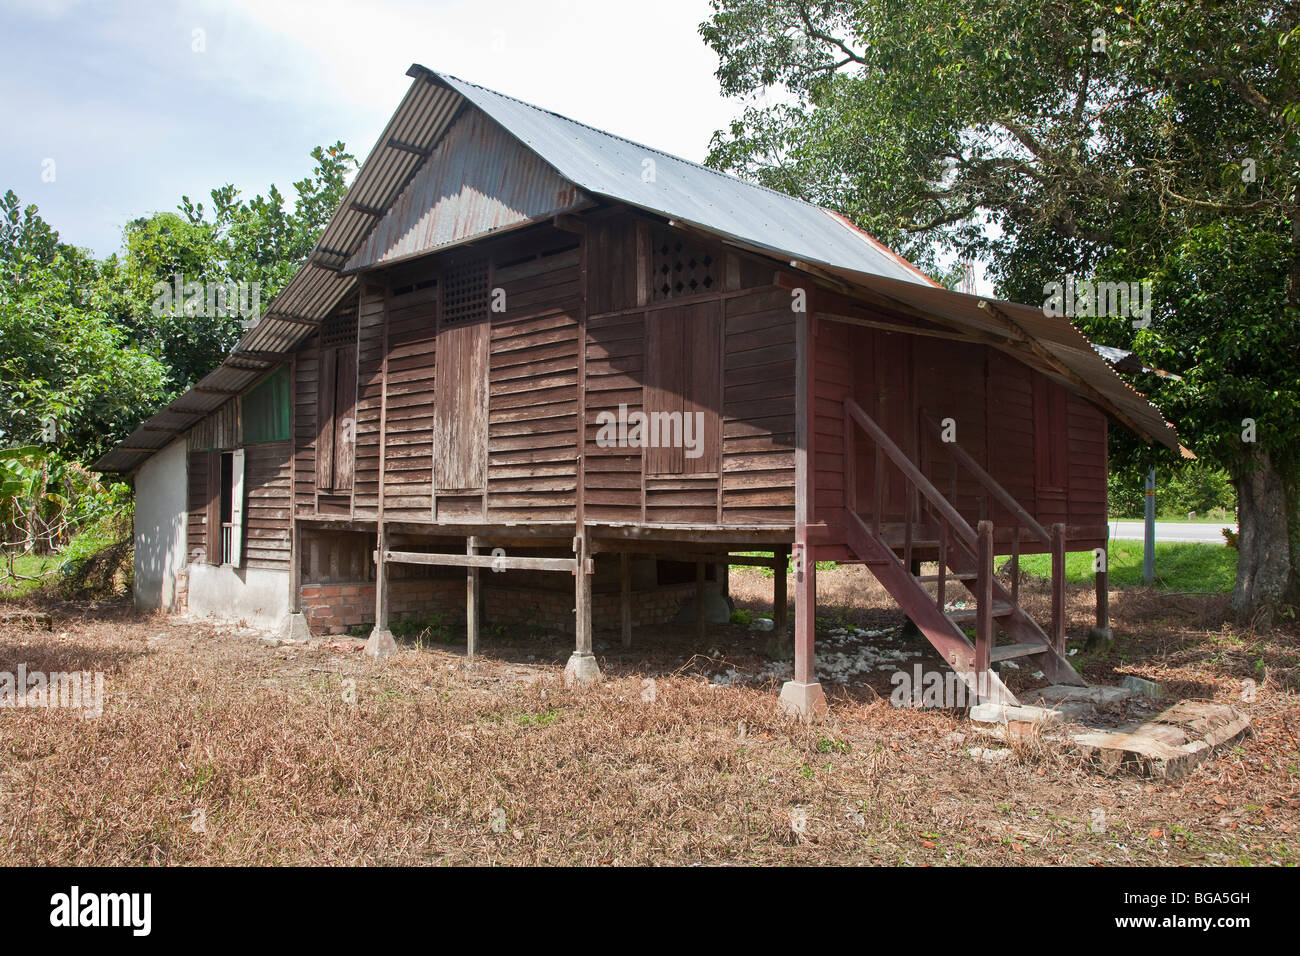 Malais traditionnel en bois maison sur pilotis, la Malaisie Banque D'Images